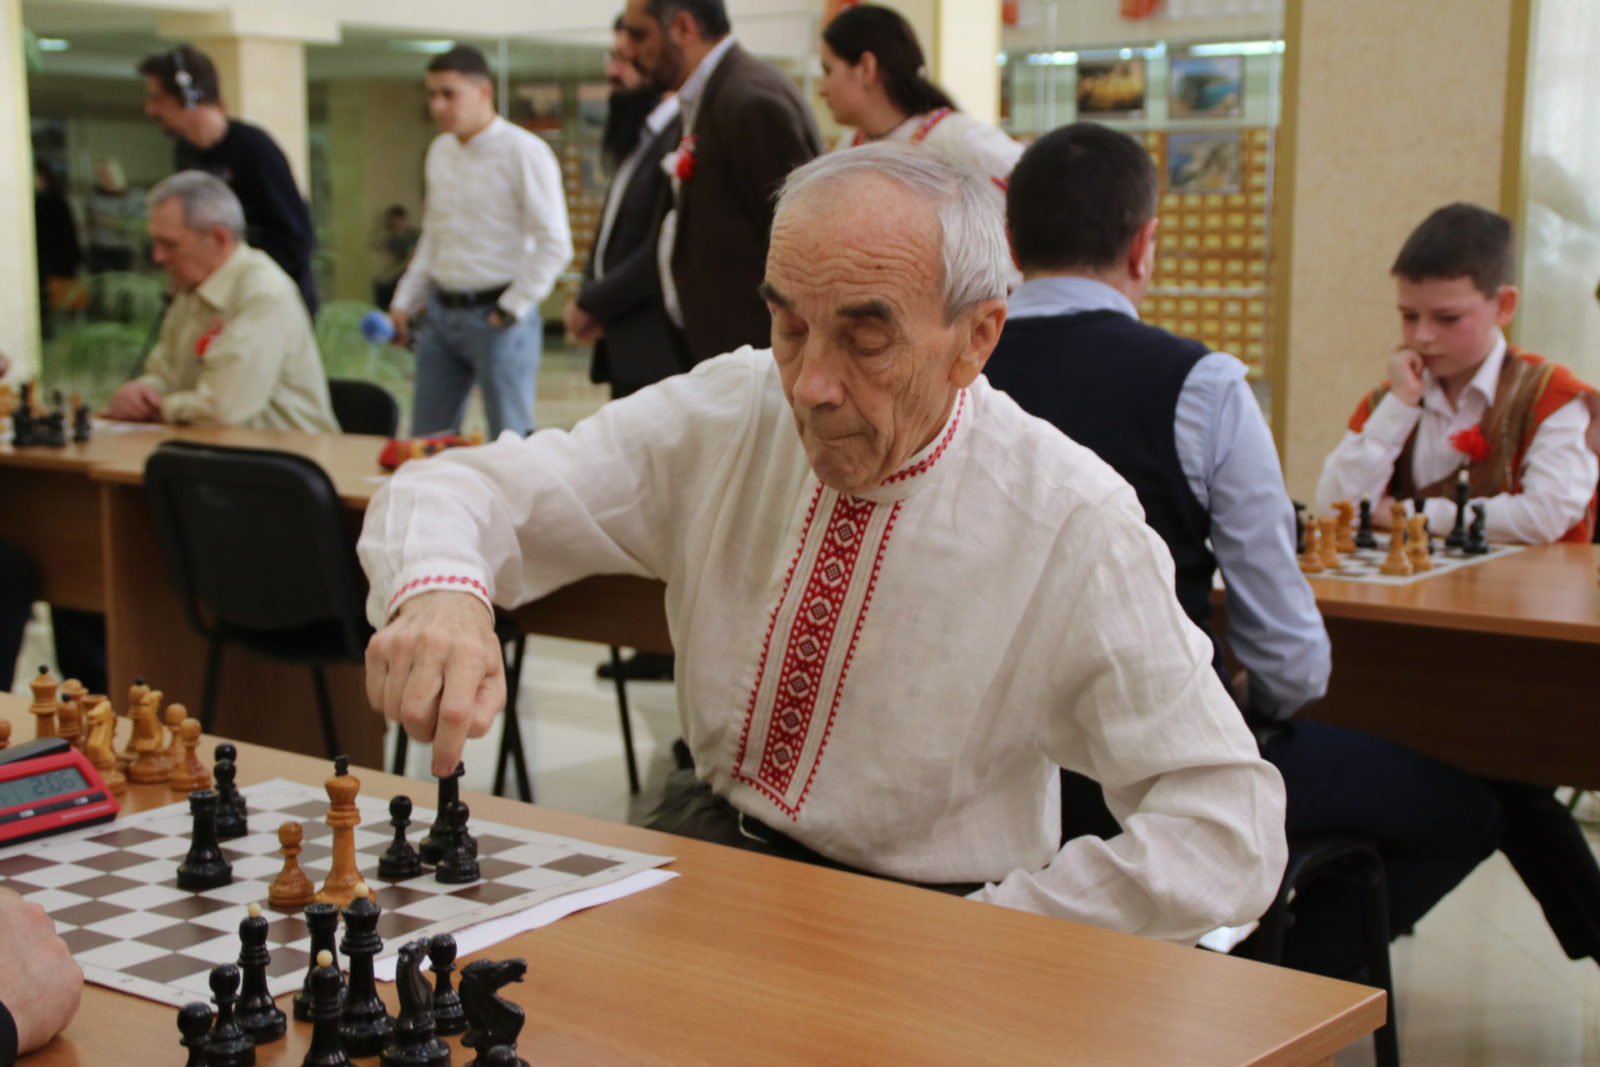 Гроссмейстер Сергей Карякин приедет на шахматный турнир, организованный болгарами Крыма [фото]